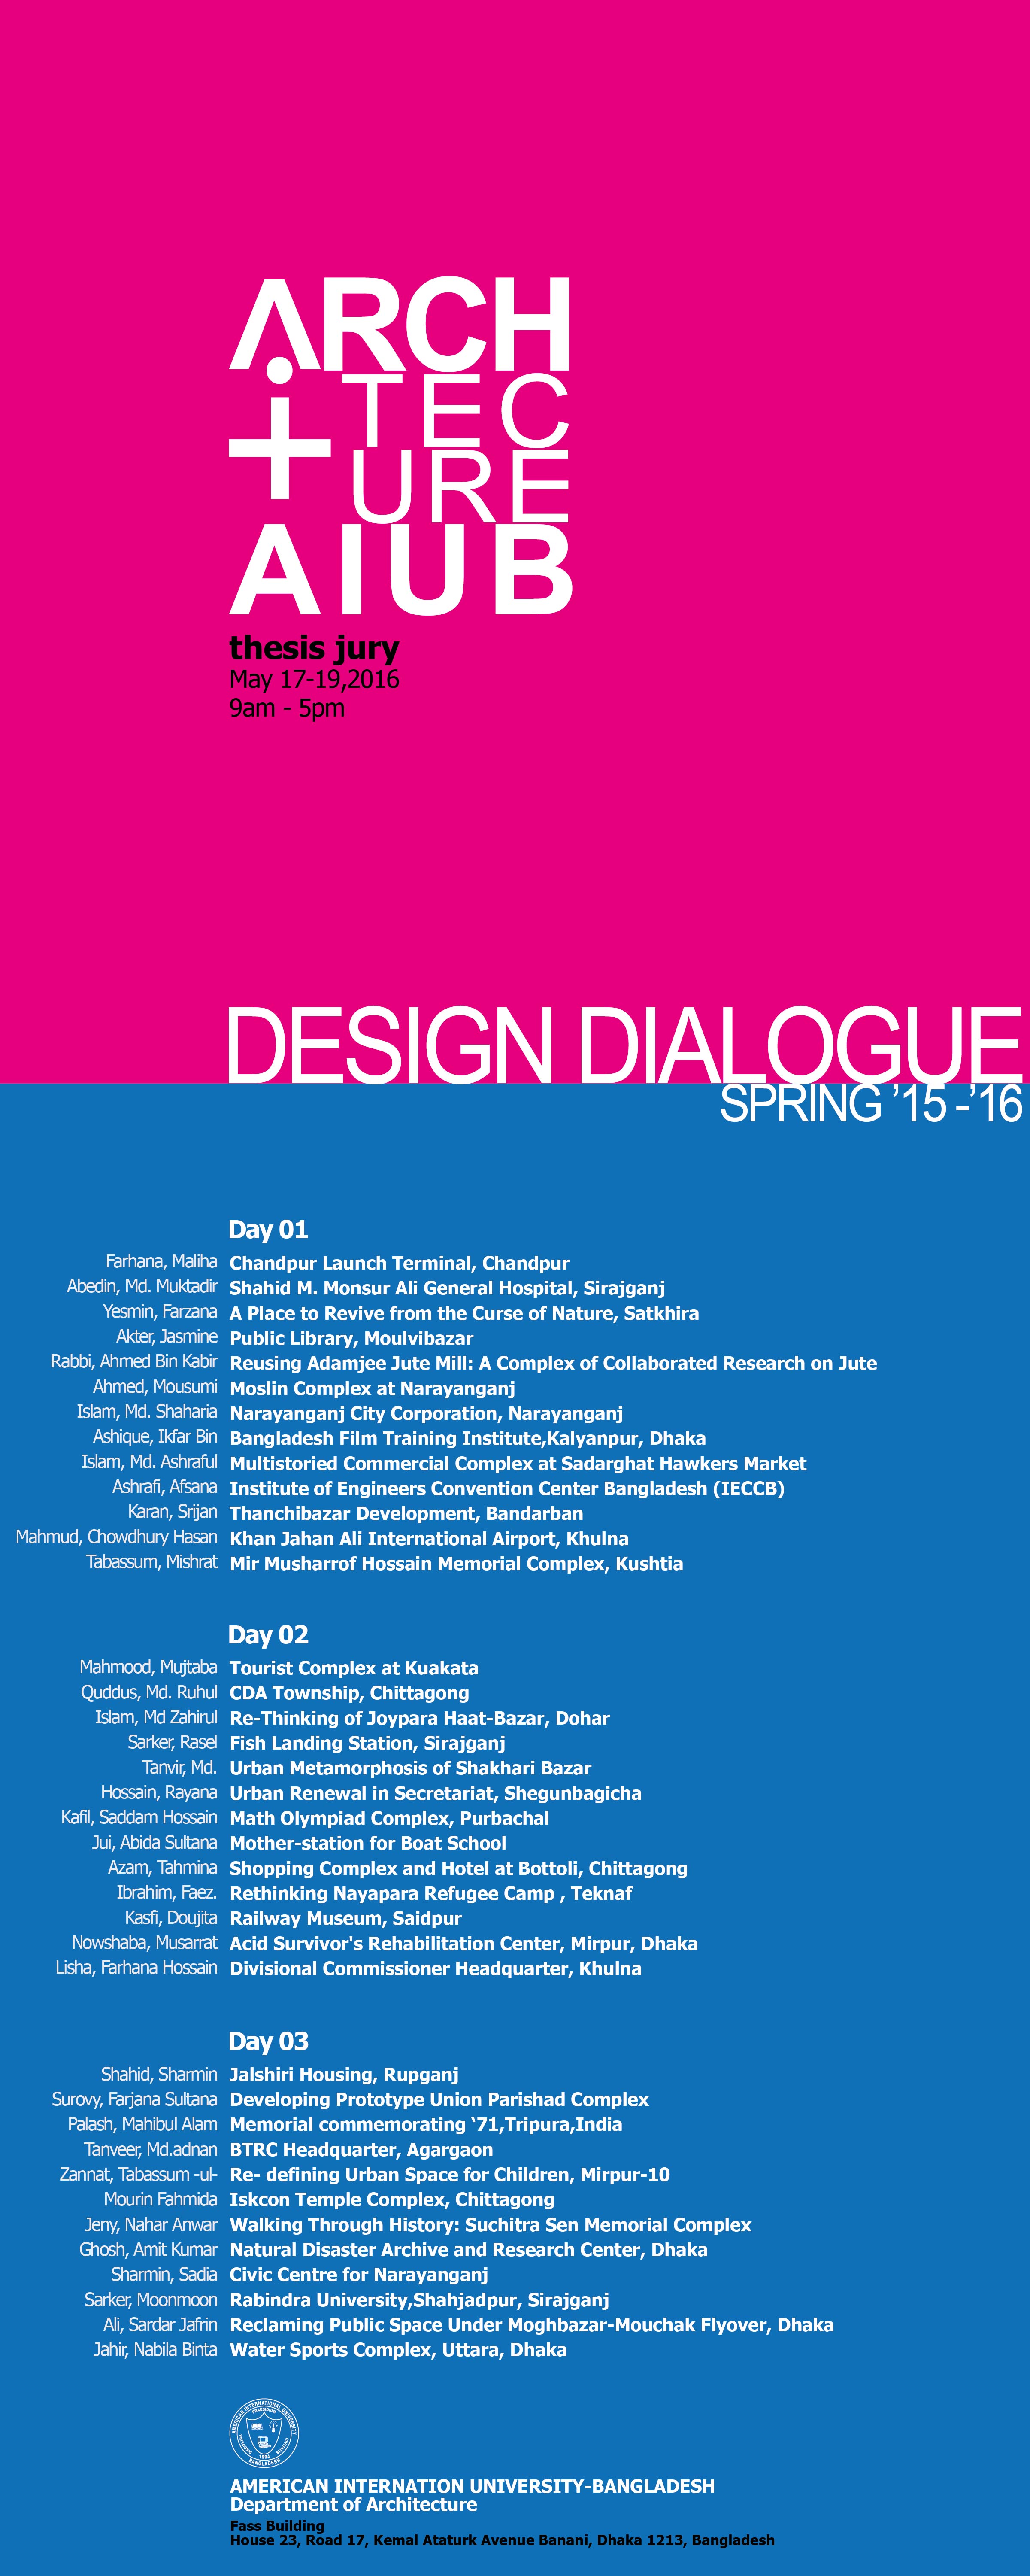 DESIGN DIALOGUE _ Spring 15-16 © AIUB